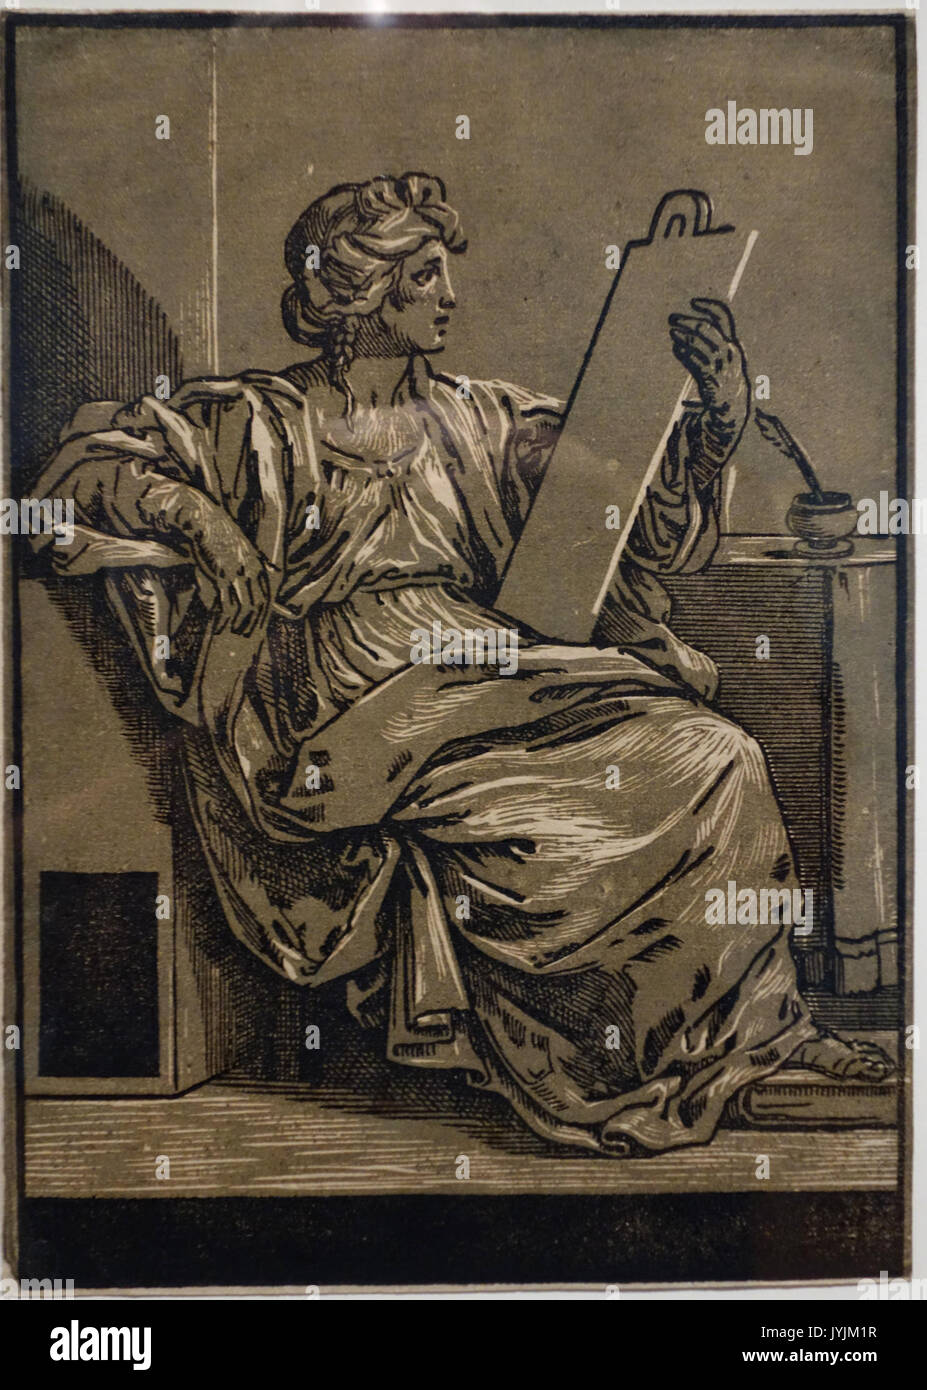 Una Sibilla (dopo Guido Reni), da Bartolomeo Coriolano, c. 1645, incisione  a legno in chiaroscuro Museo Nazionale di Arte Occidentale di Tokyo  DSC08316 Foto stock - Alamy